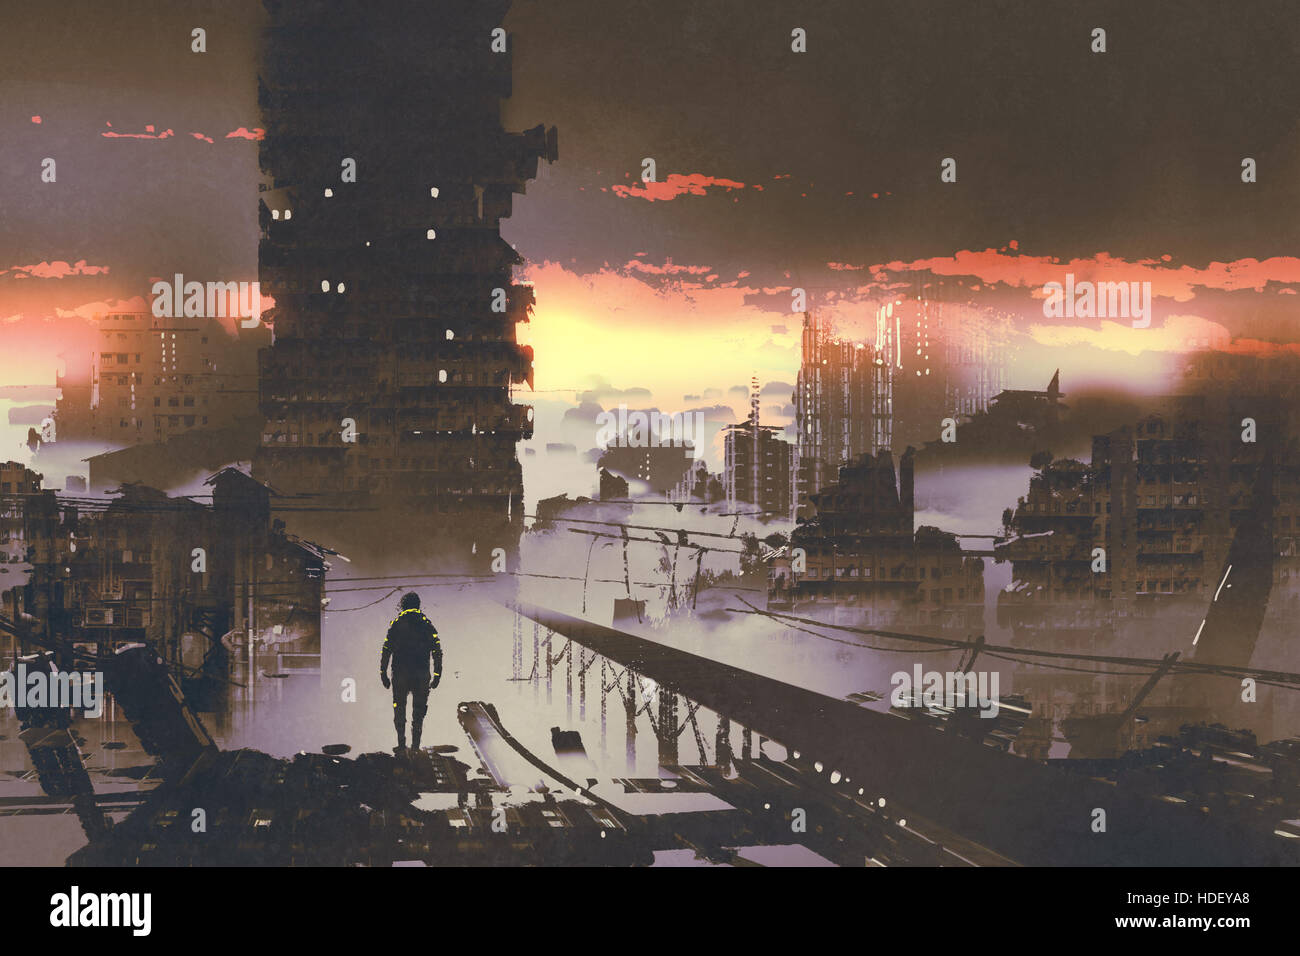 Homme debout dans la ville abandonnée,concept sci-fi,illustration peinture Banque D'Images